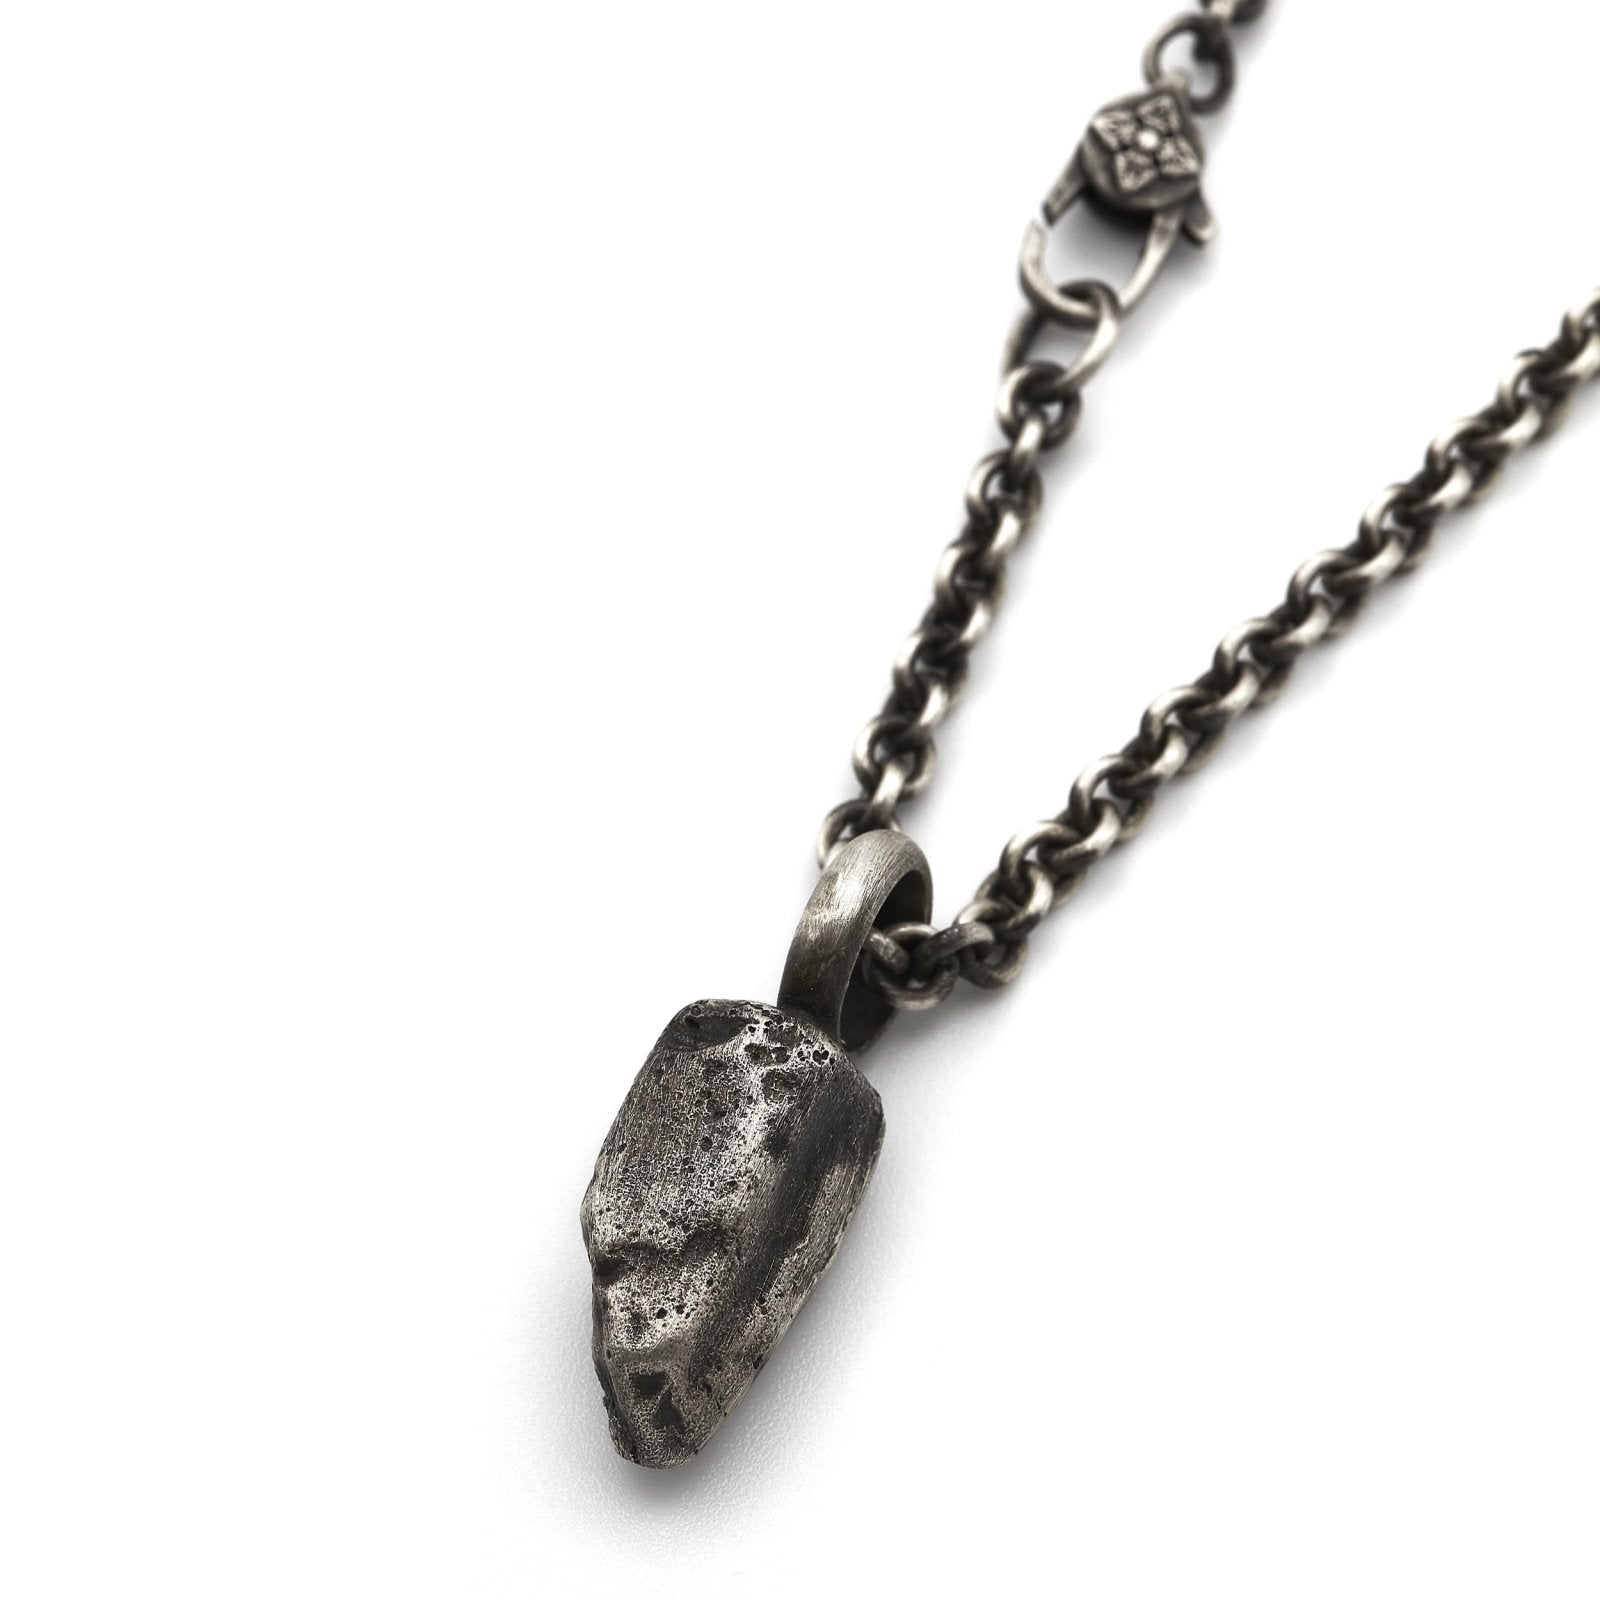 Halskette aus Silber massiv oxidiert Brighton England Kieselsteinoptik